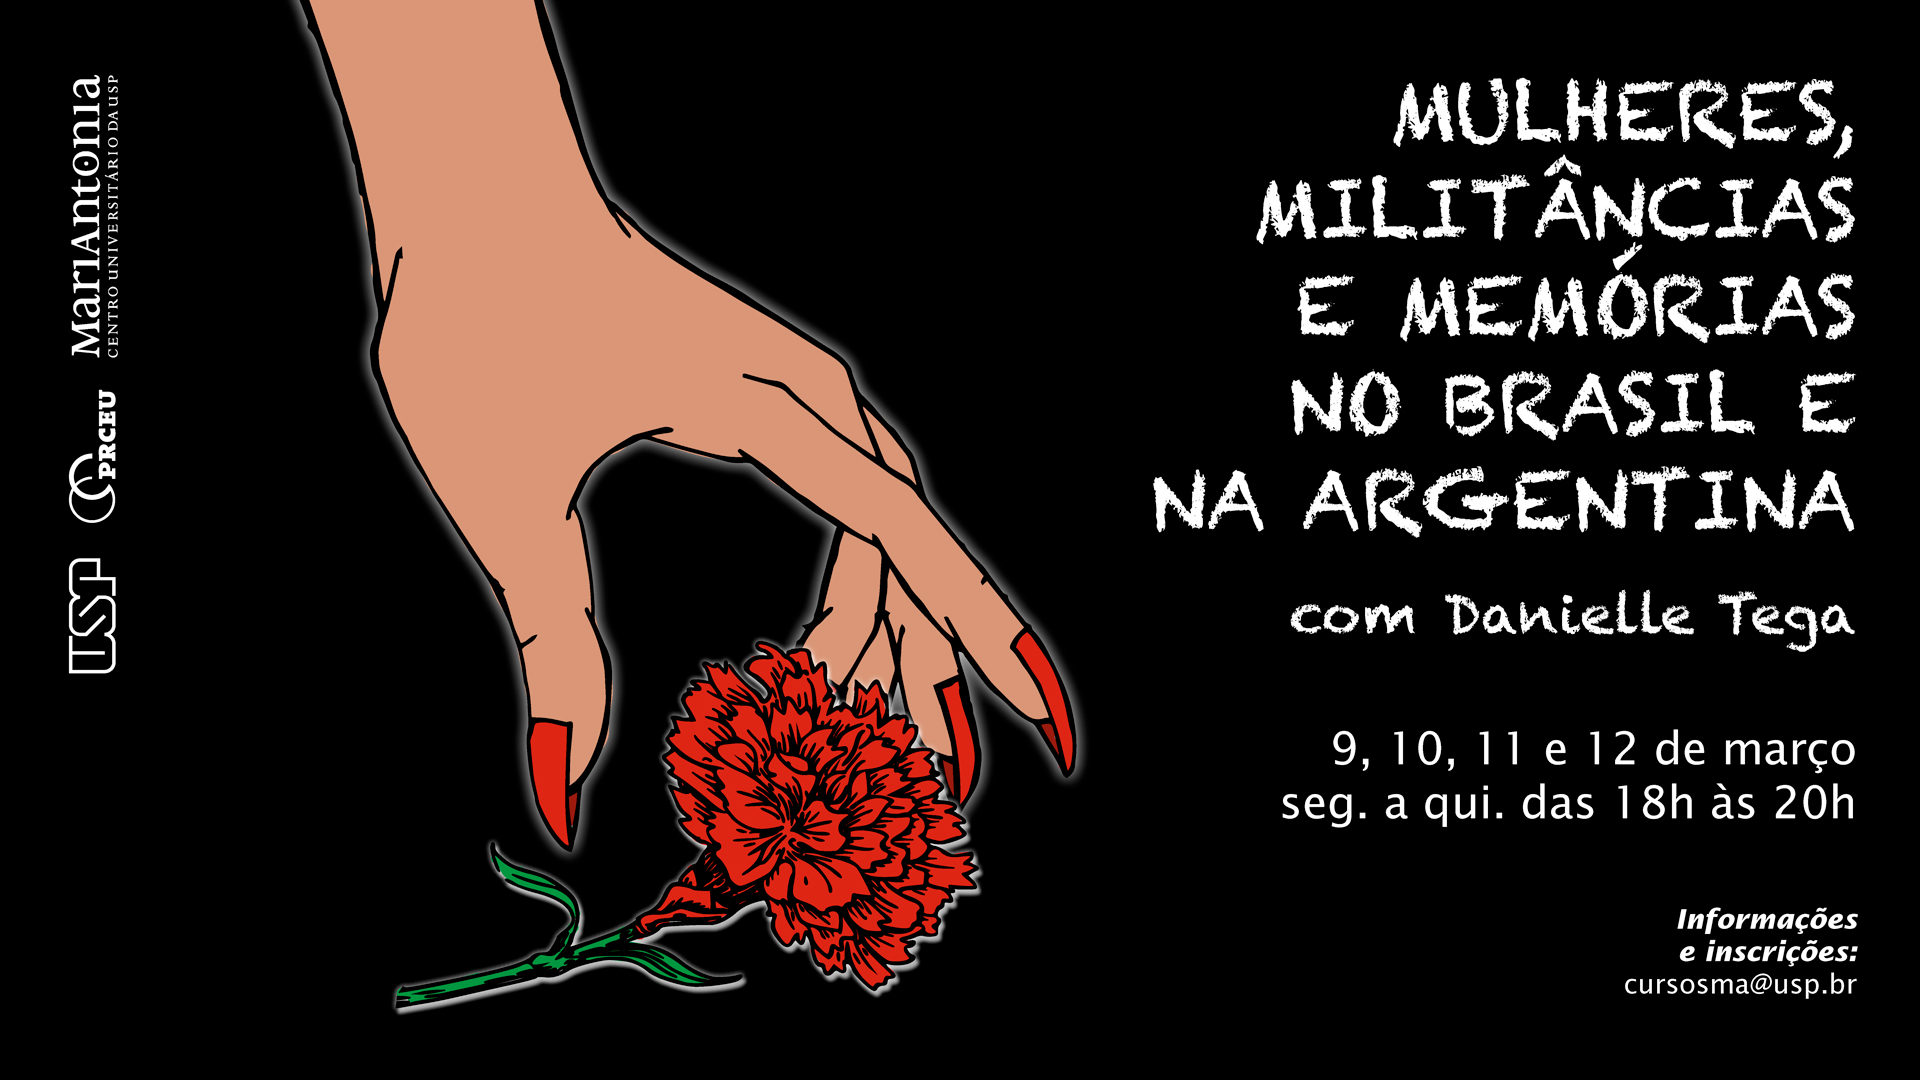 Curso analisa testemunhos de mulheres militantes do Brasil e da Argentina